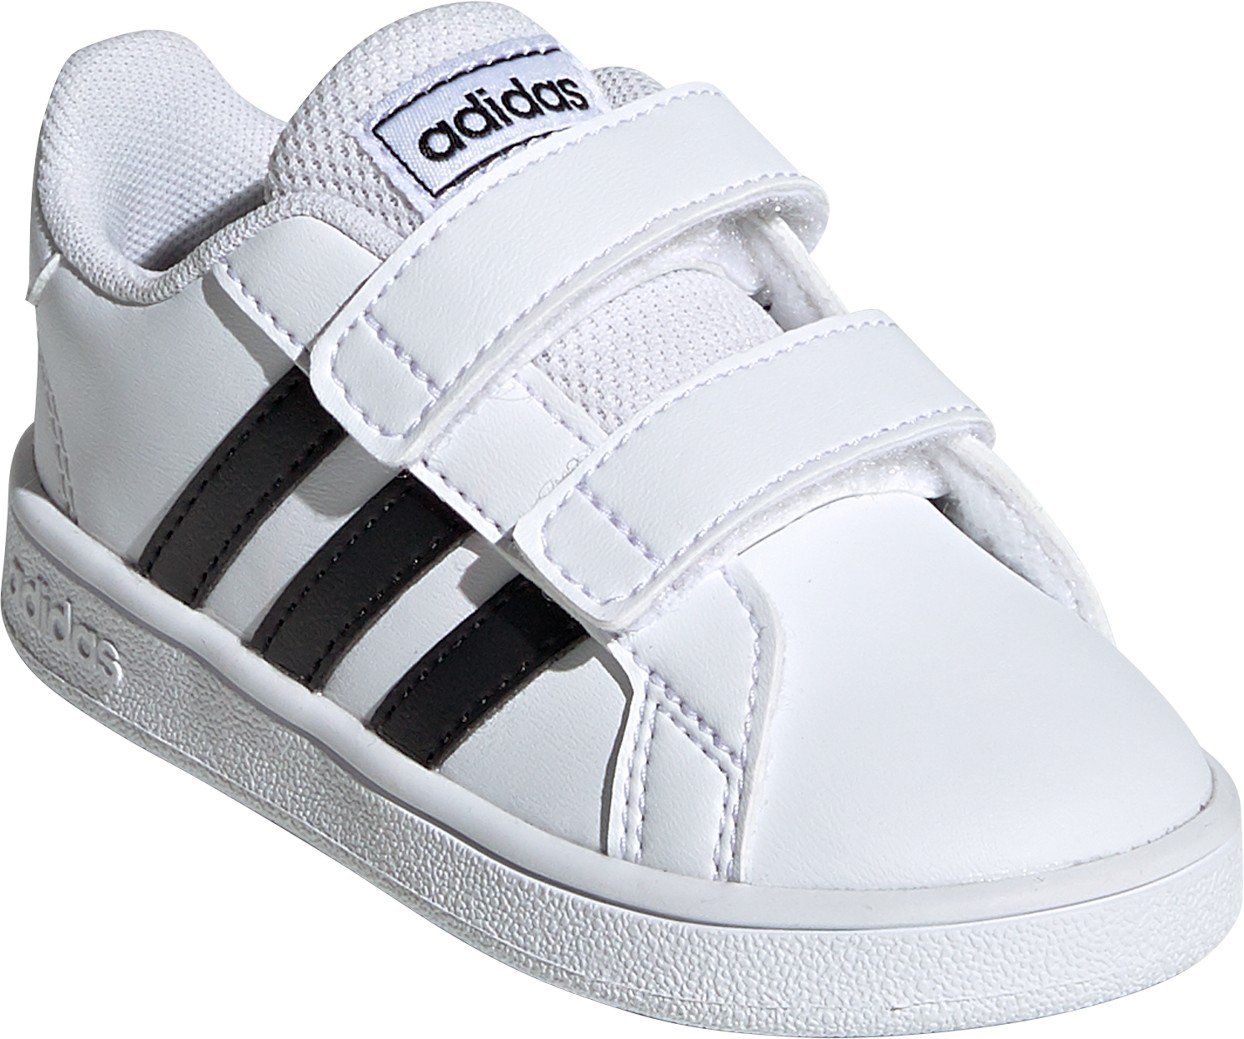 adidas toddler girls shoes